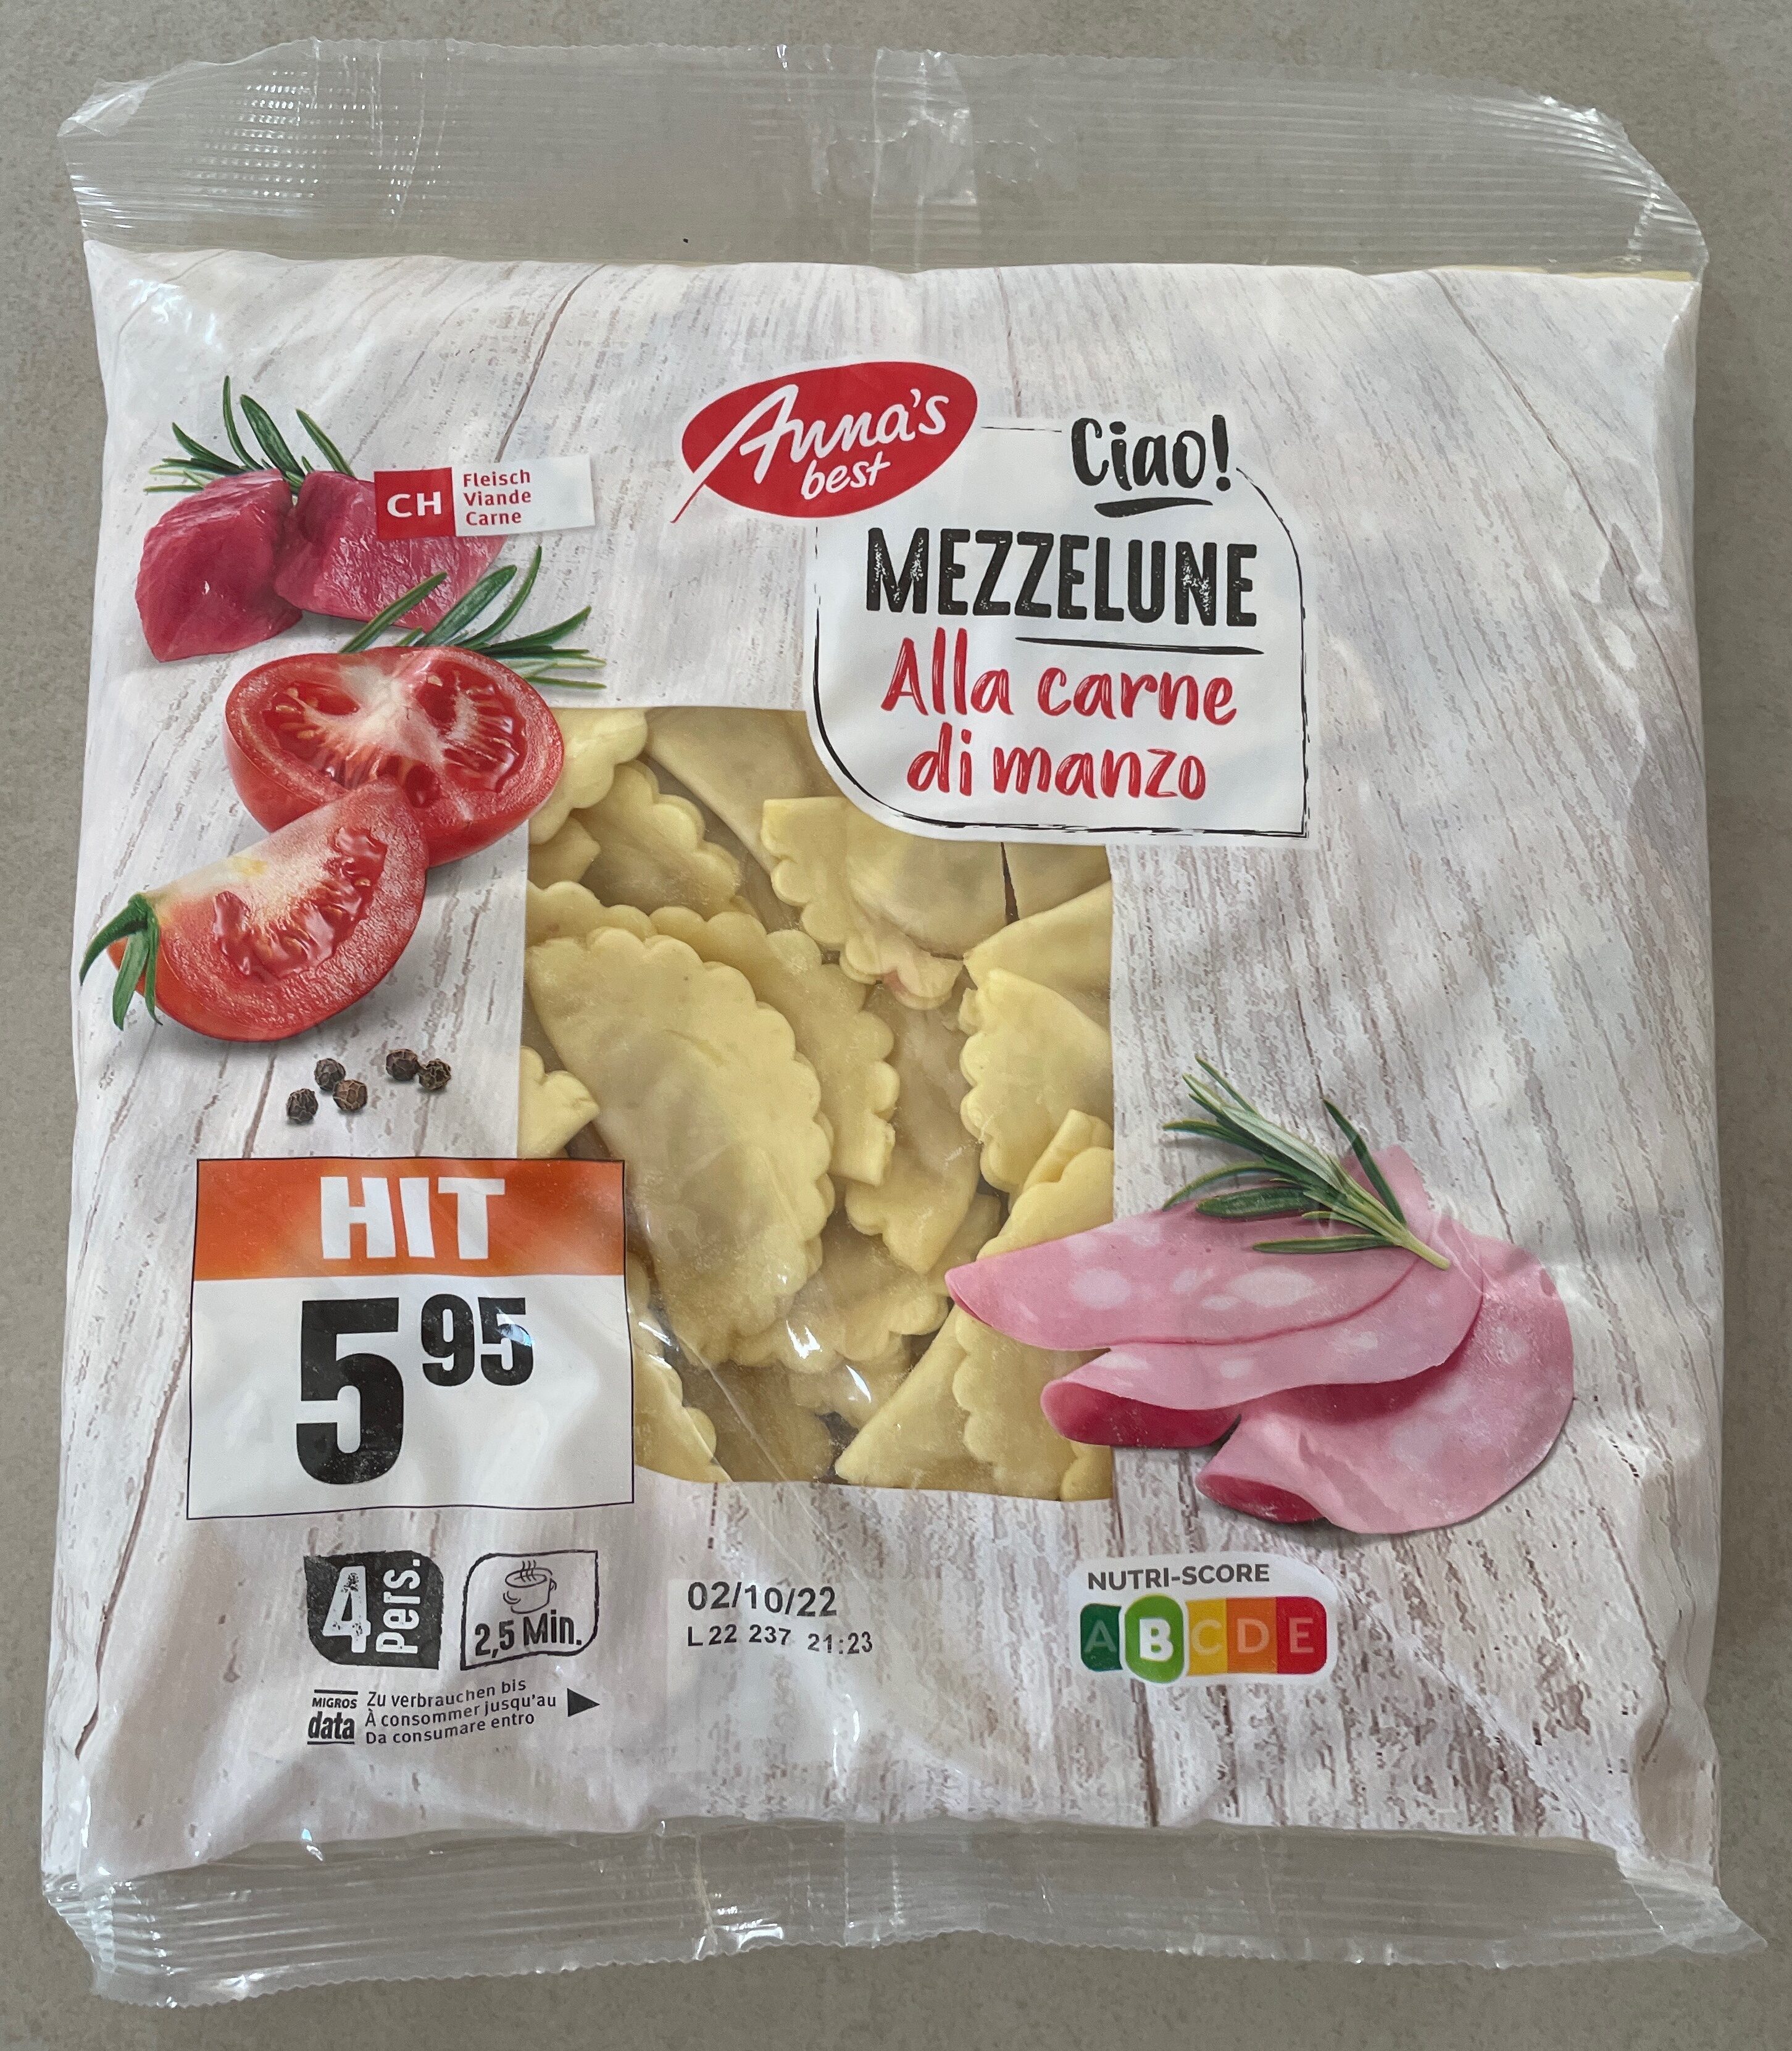 Mezzelune Alla carne di manzo - Prodotto - fr